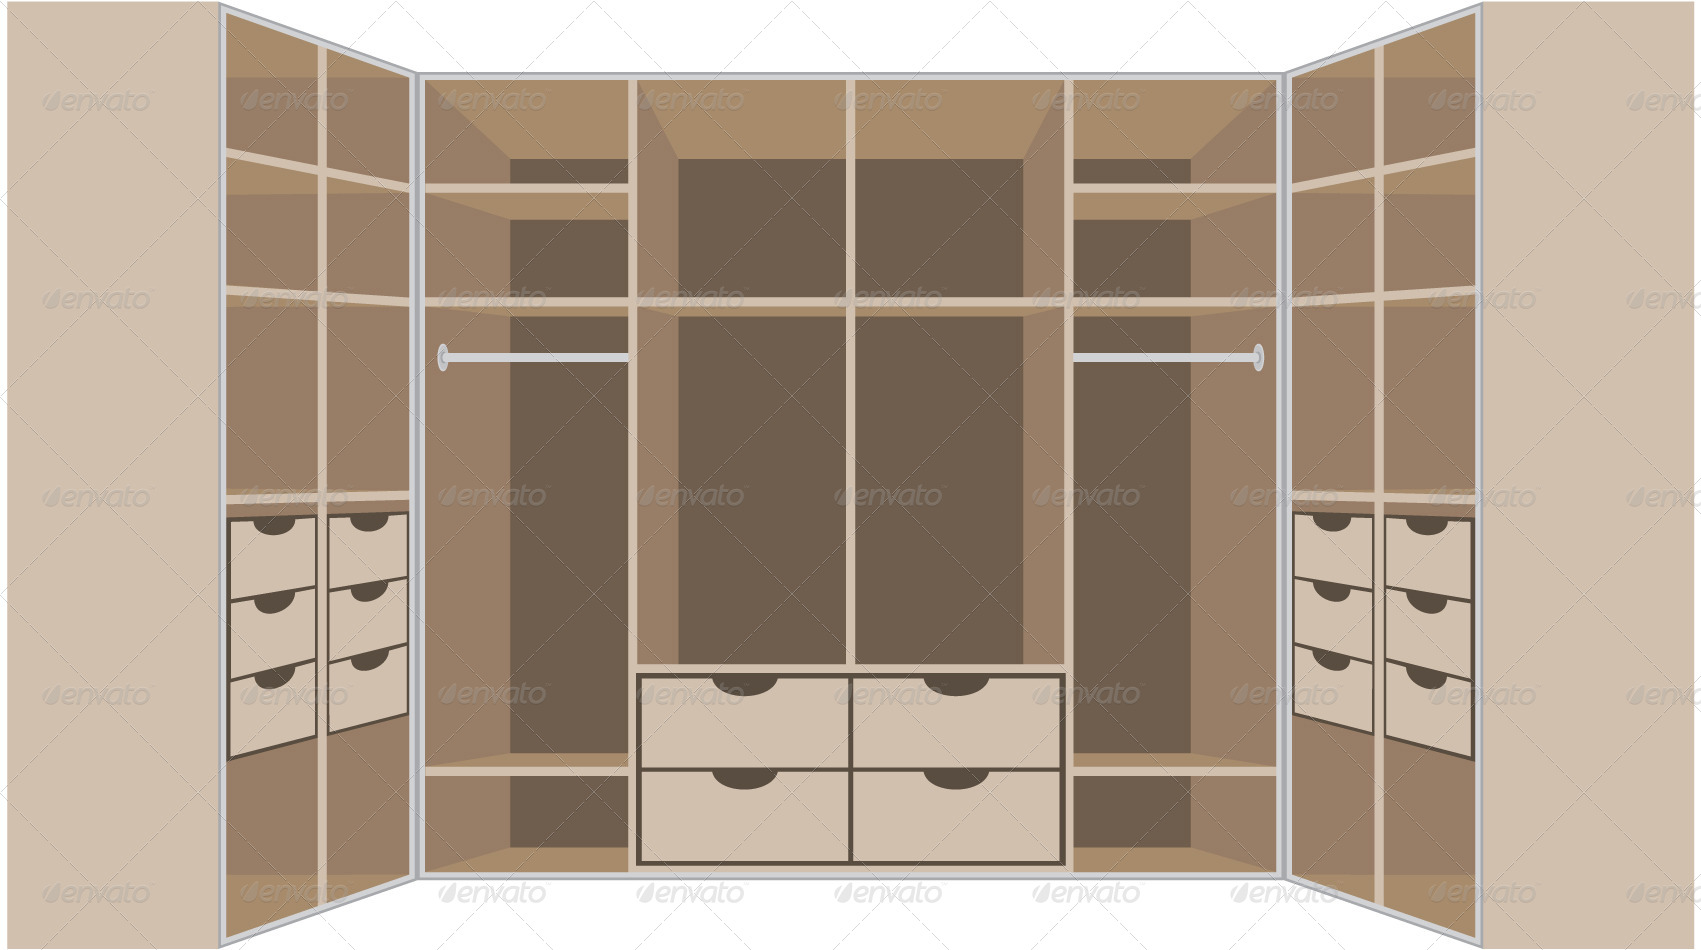 Wardrobe Room Set by GurZZZa | GraphicRiver